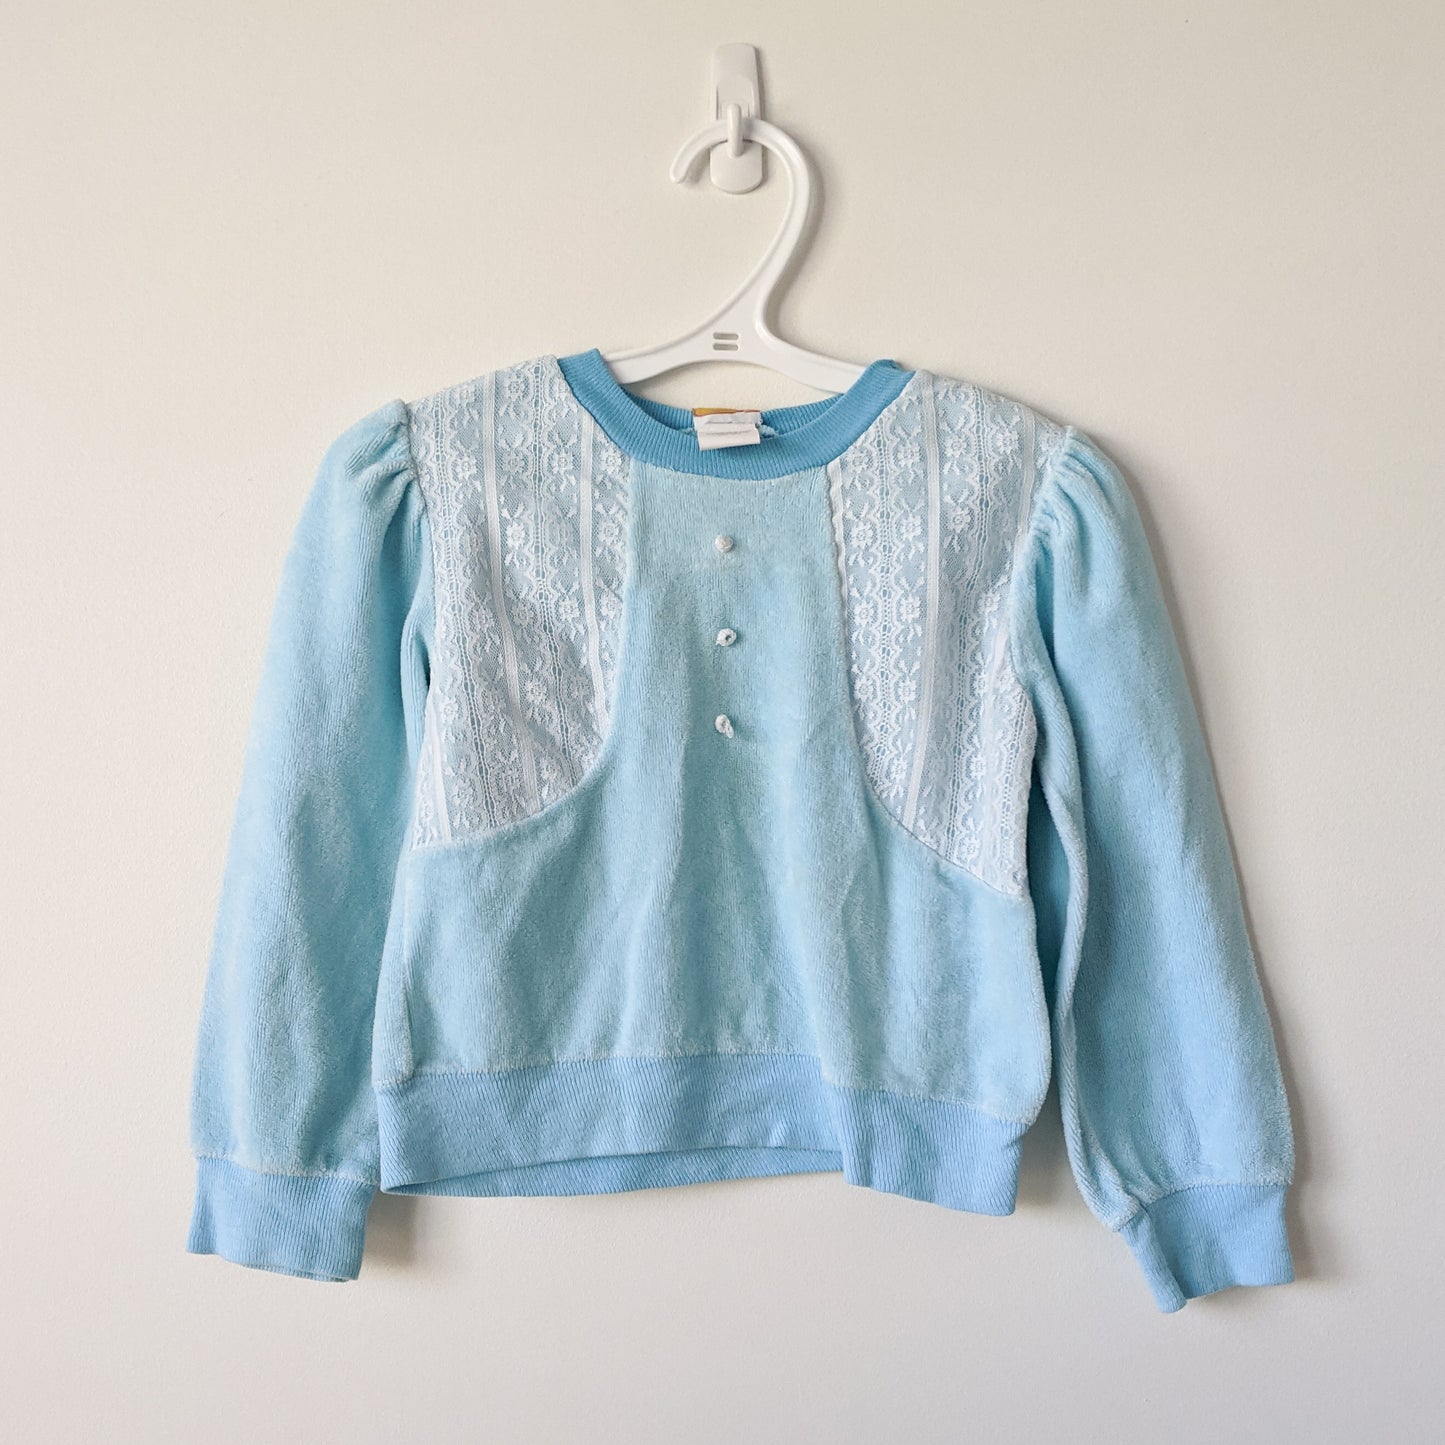 Vintage Velour Sweatshirt • 18-24 months